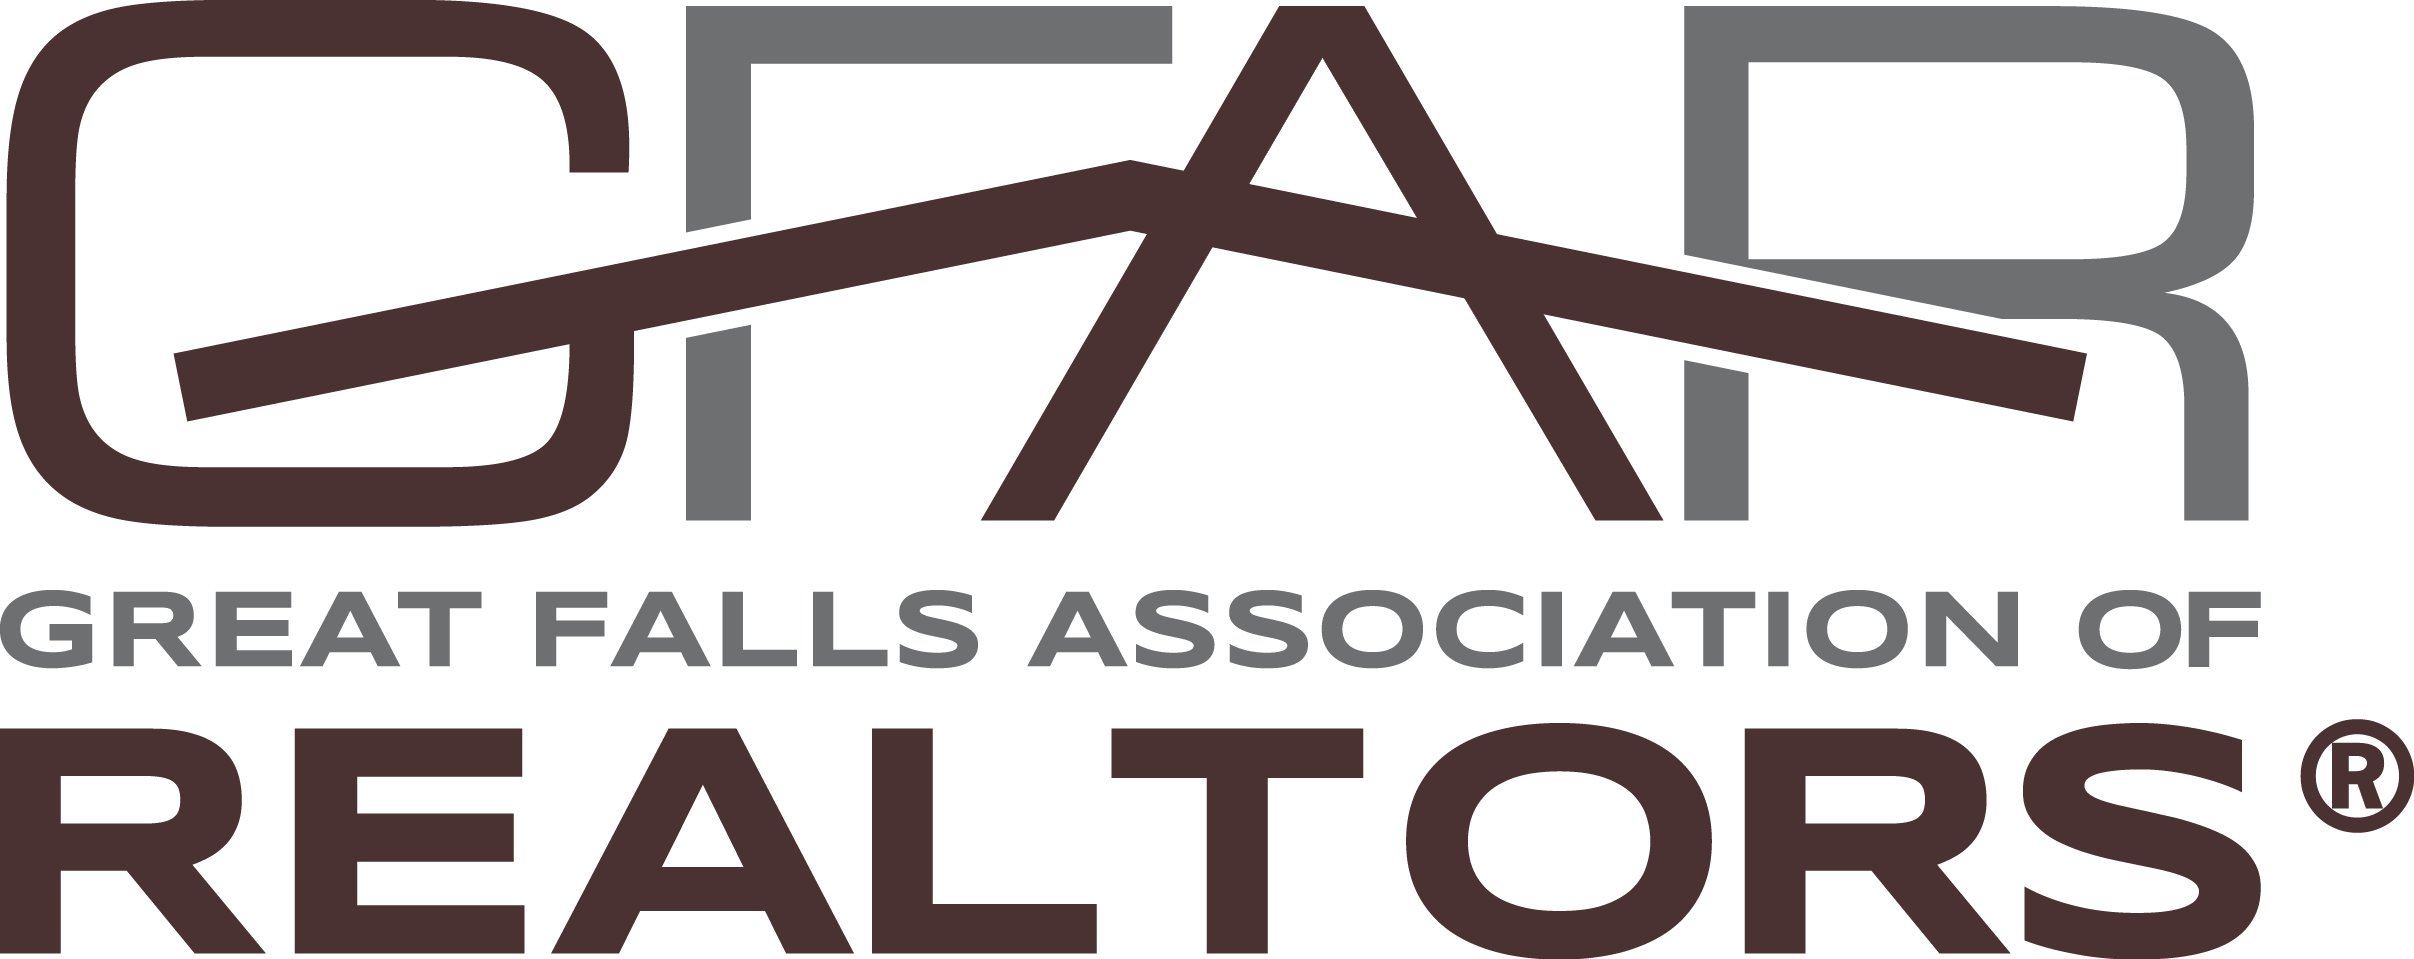 Great Falls Association of Realtors